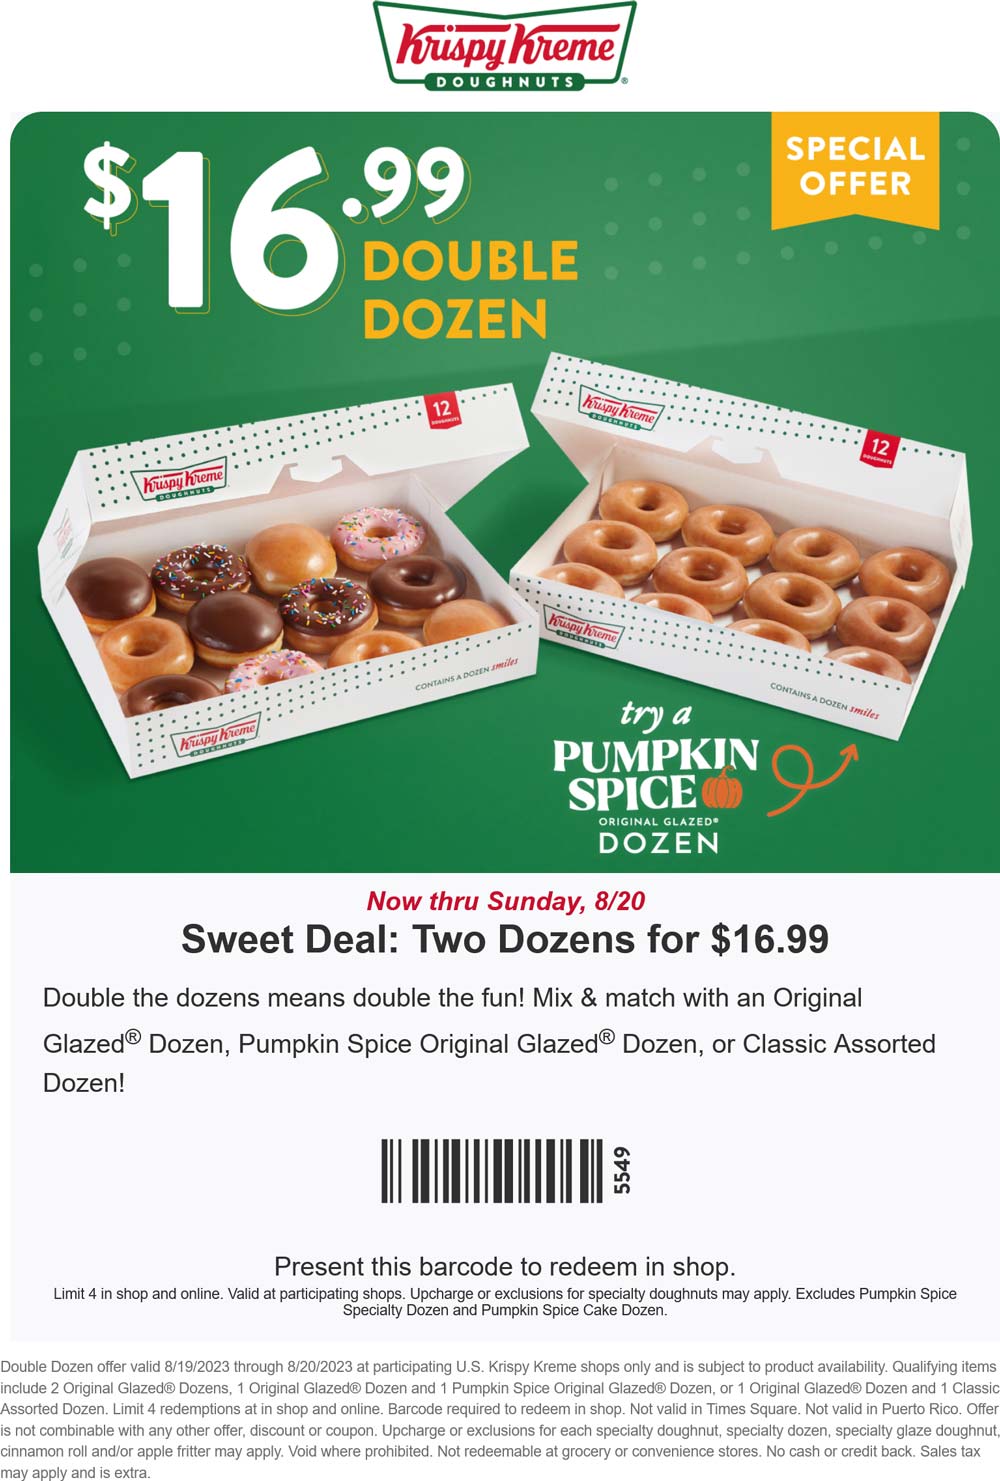 Krispy Kreme restaurants Coupon  2 dozen glazed doughnuts for $17 at Krispy Kreme #krispykreme 